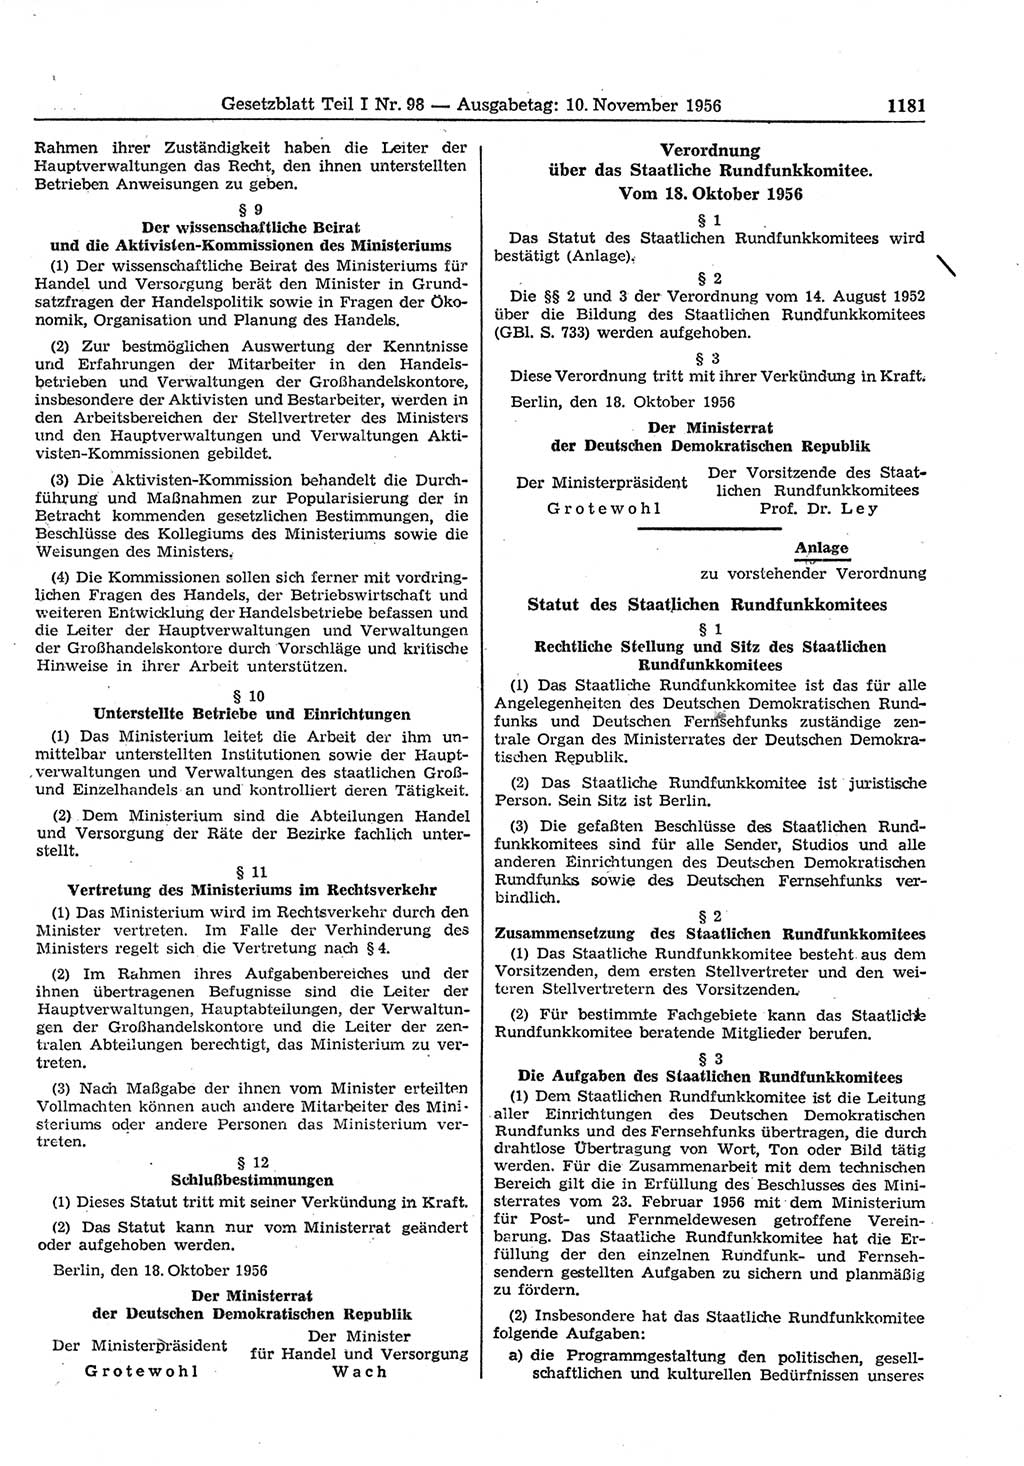 Gesetzblatt (GBl.) der Deutschen Demokratischen Republik (DDR) Teil Ⅰ 1956, Seite 1181 (GBl. DDR Ⅰ 1956, S. 1181)